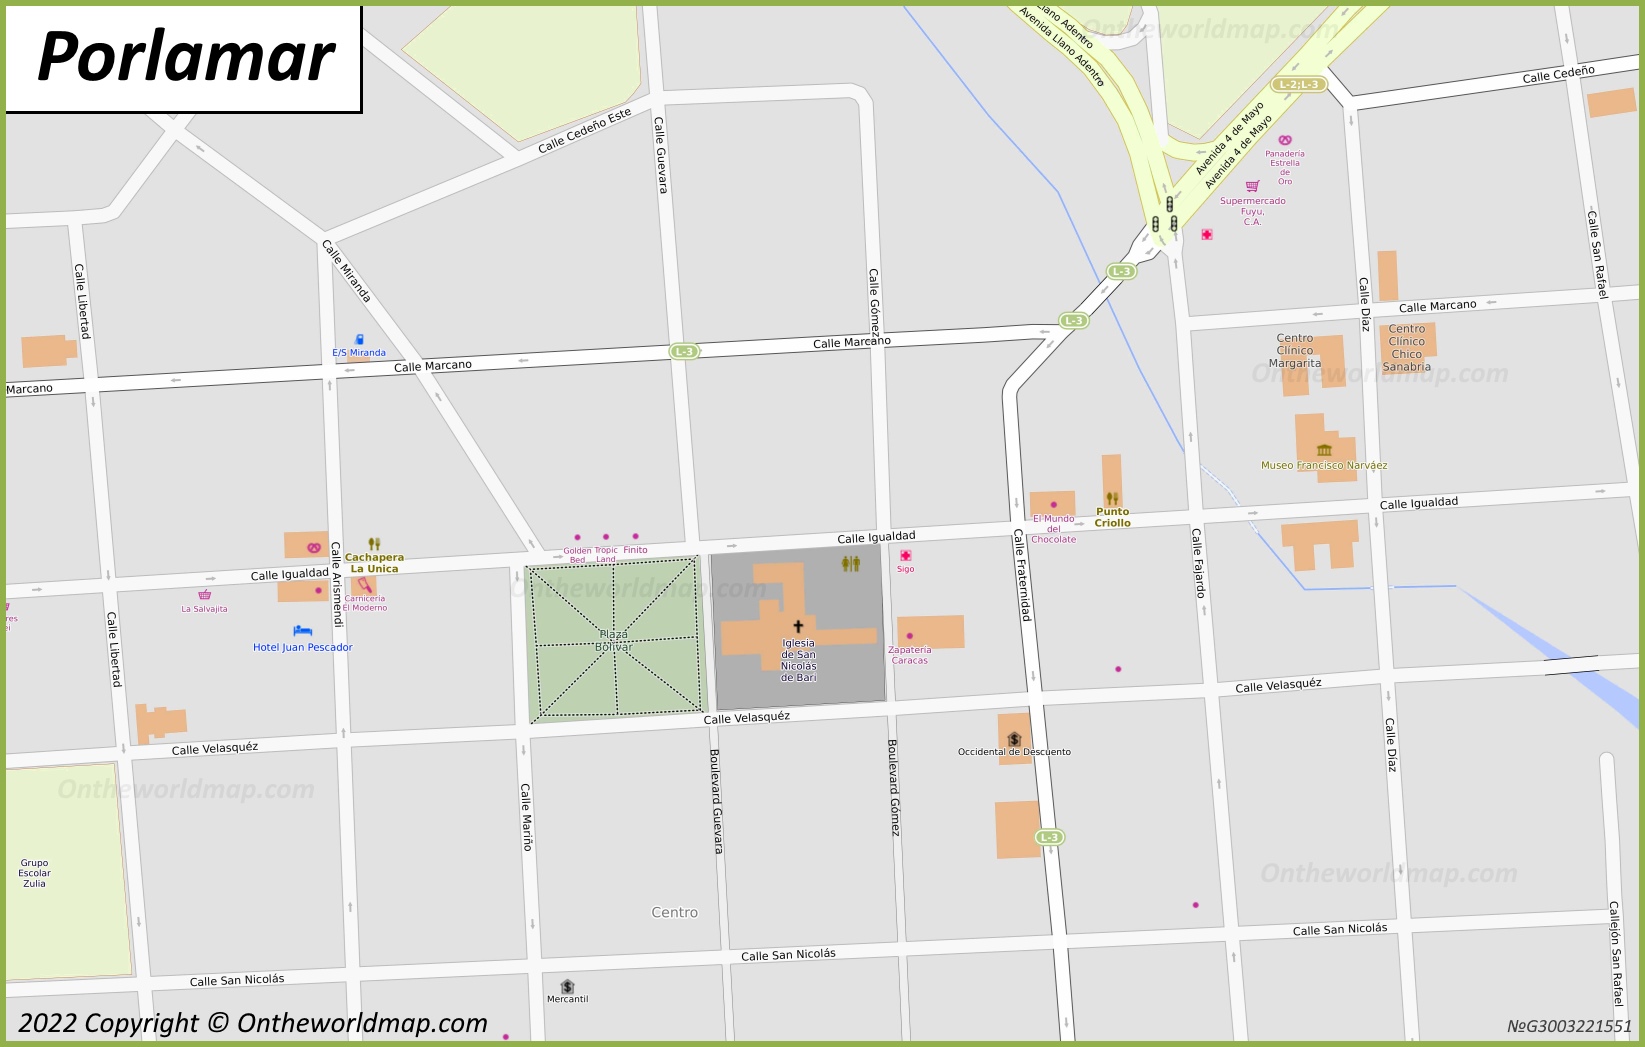 Porlamar City Centre Map